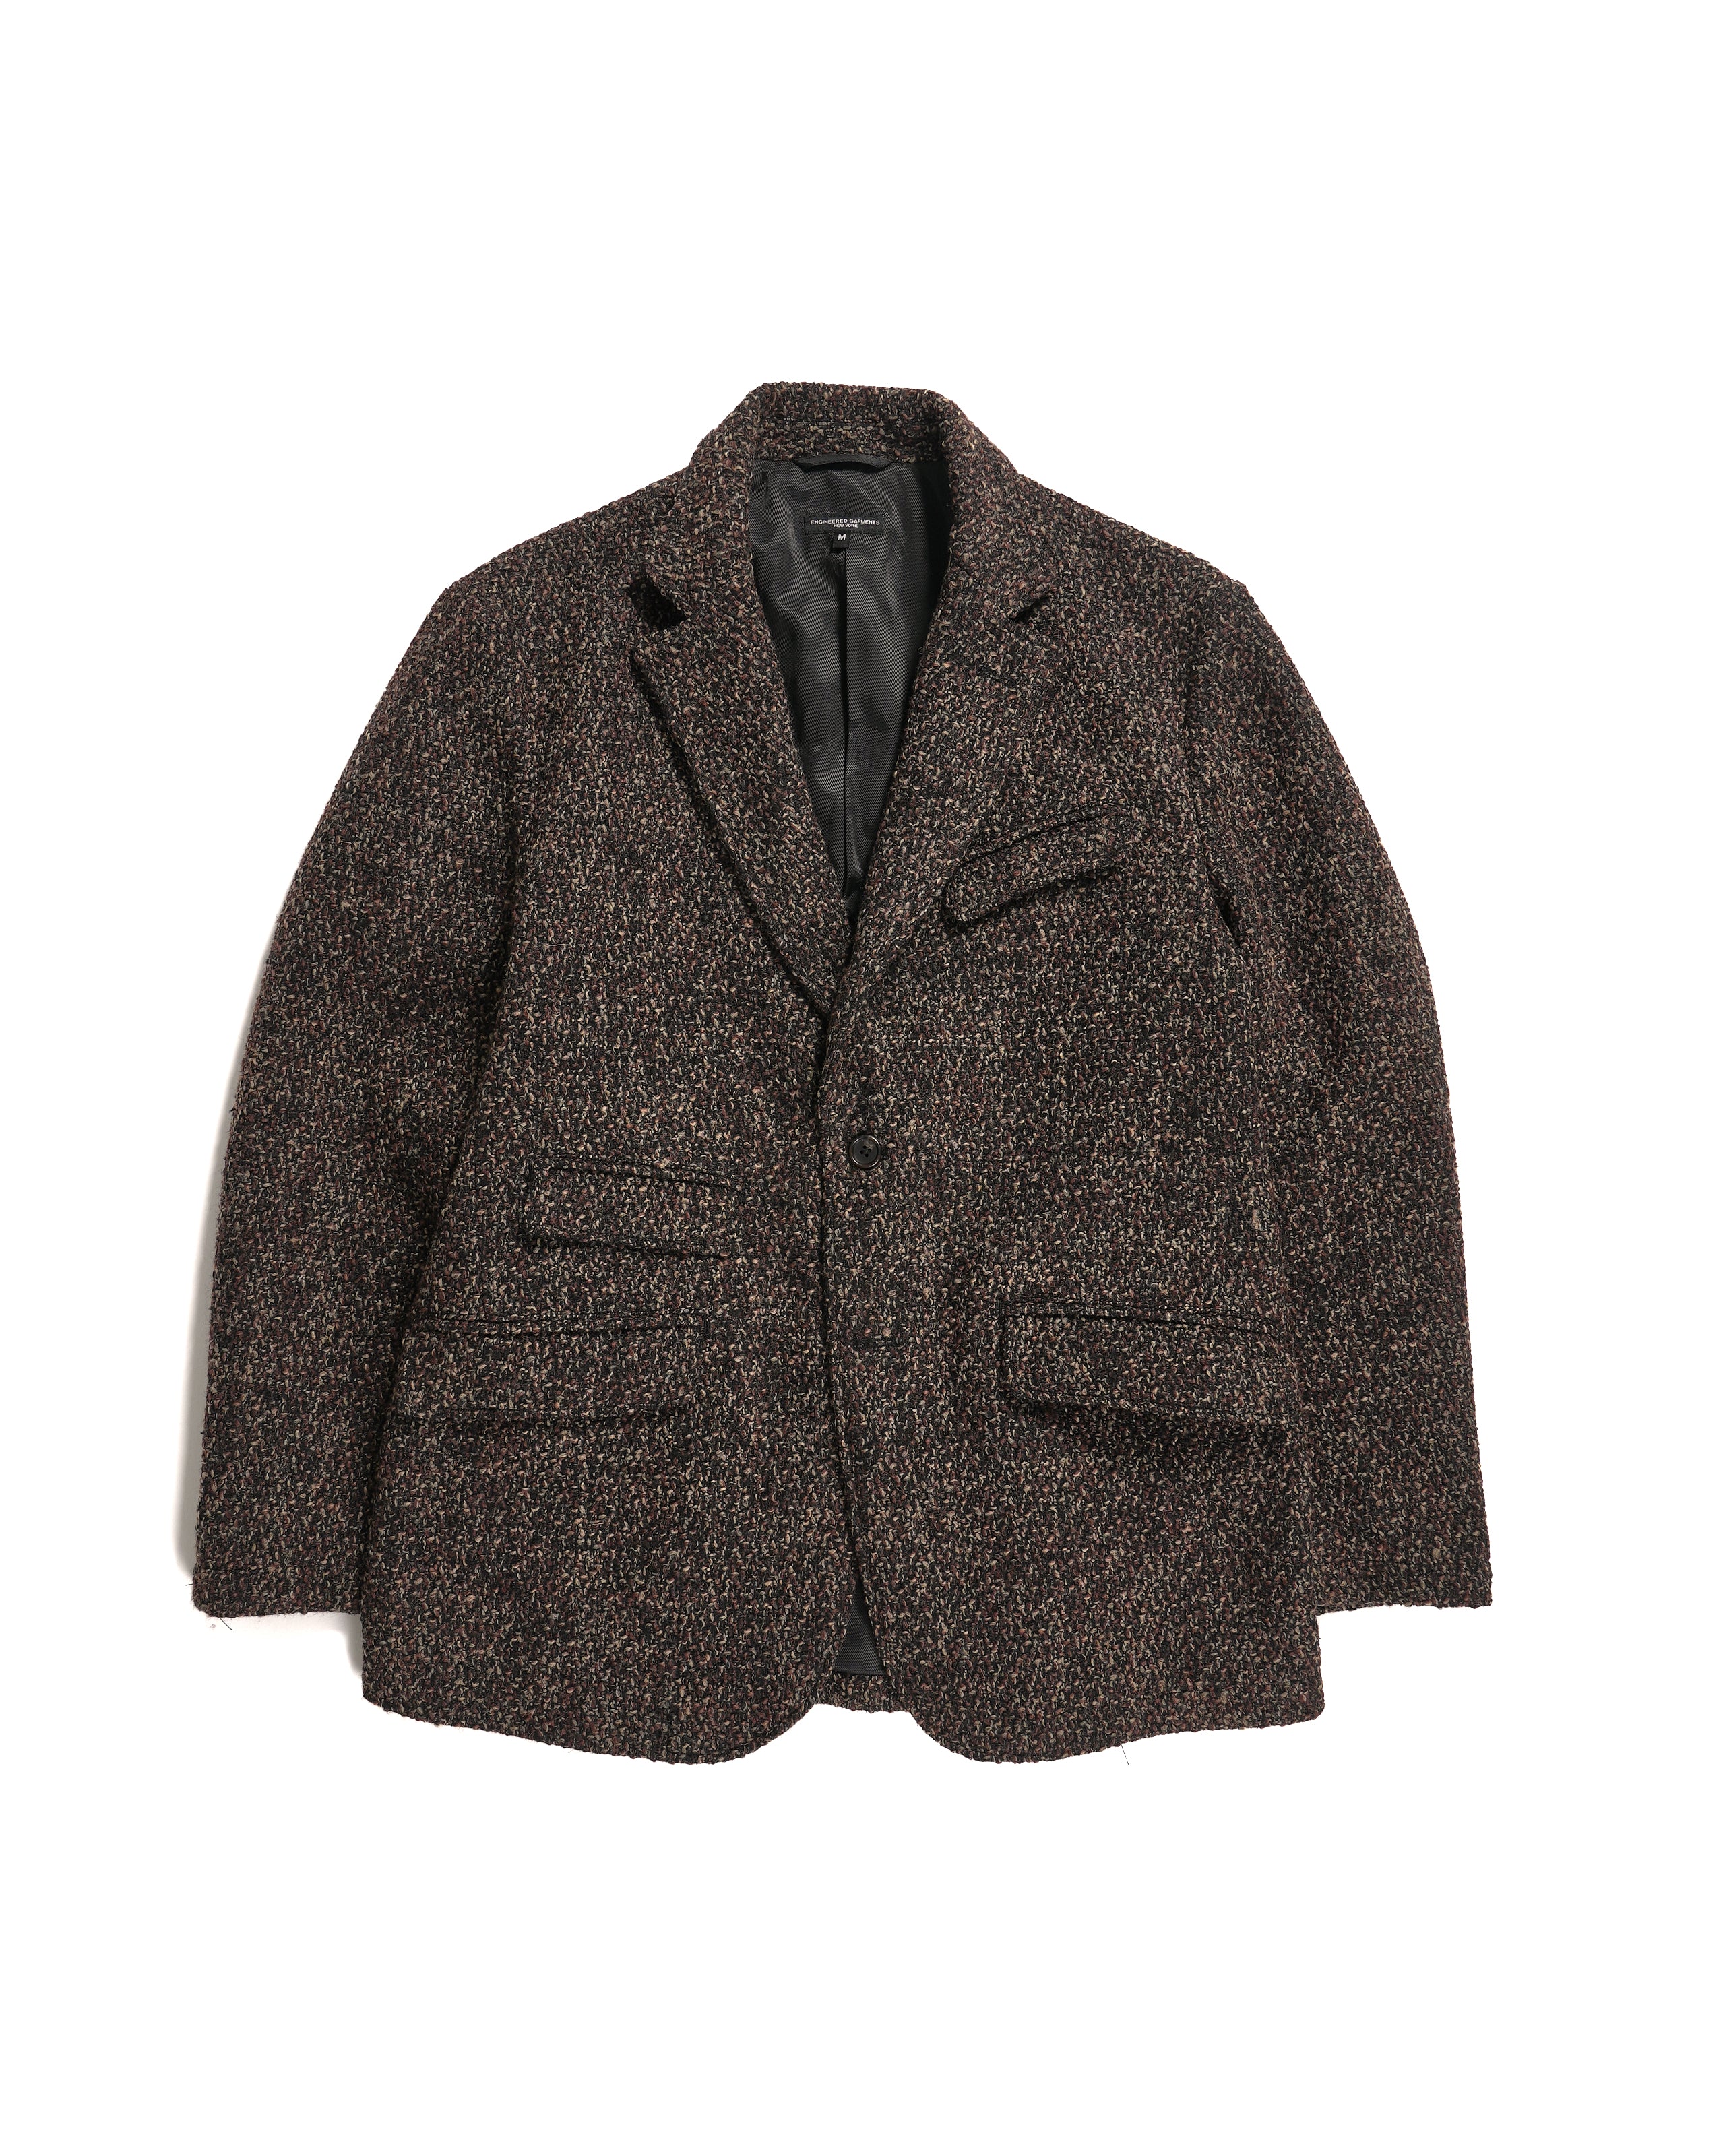 Andover Jacket - Dk. Brown Polyester Wool Tweed Boucle